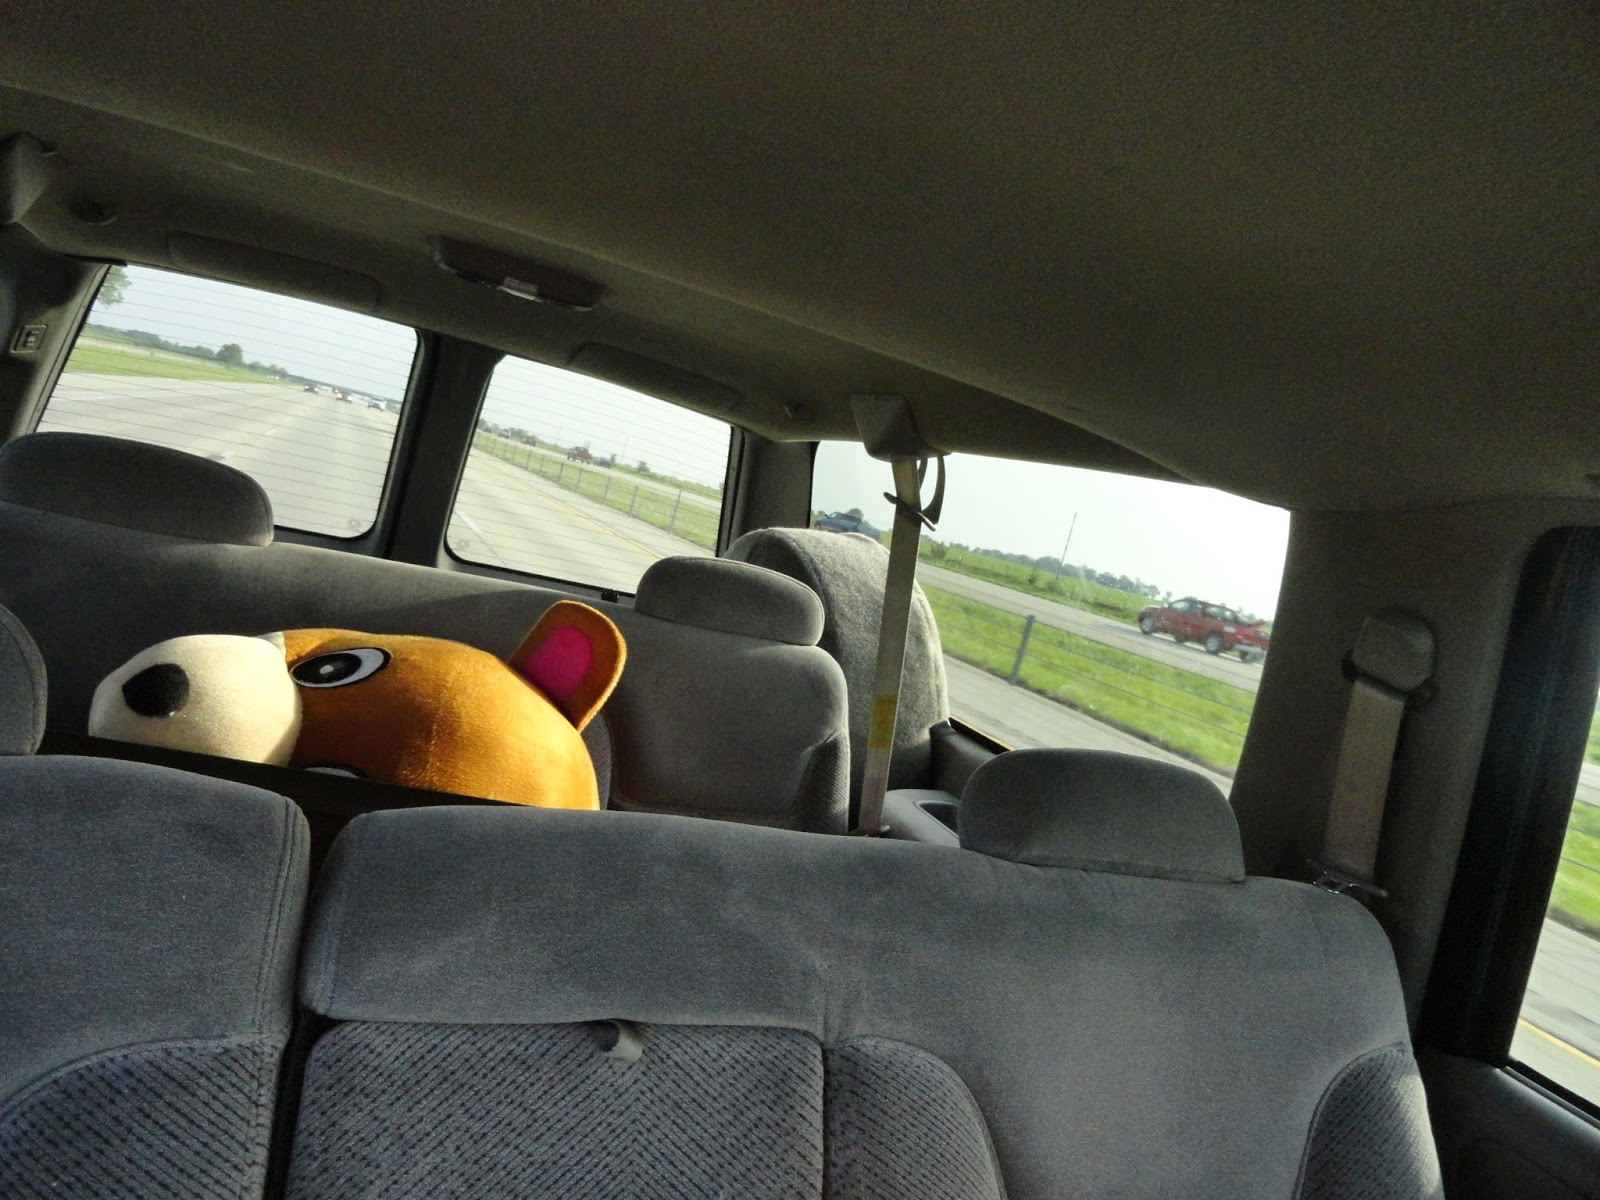 Bear in Car